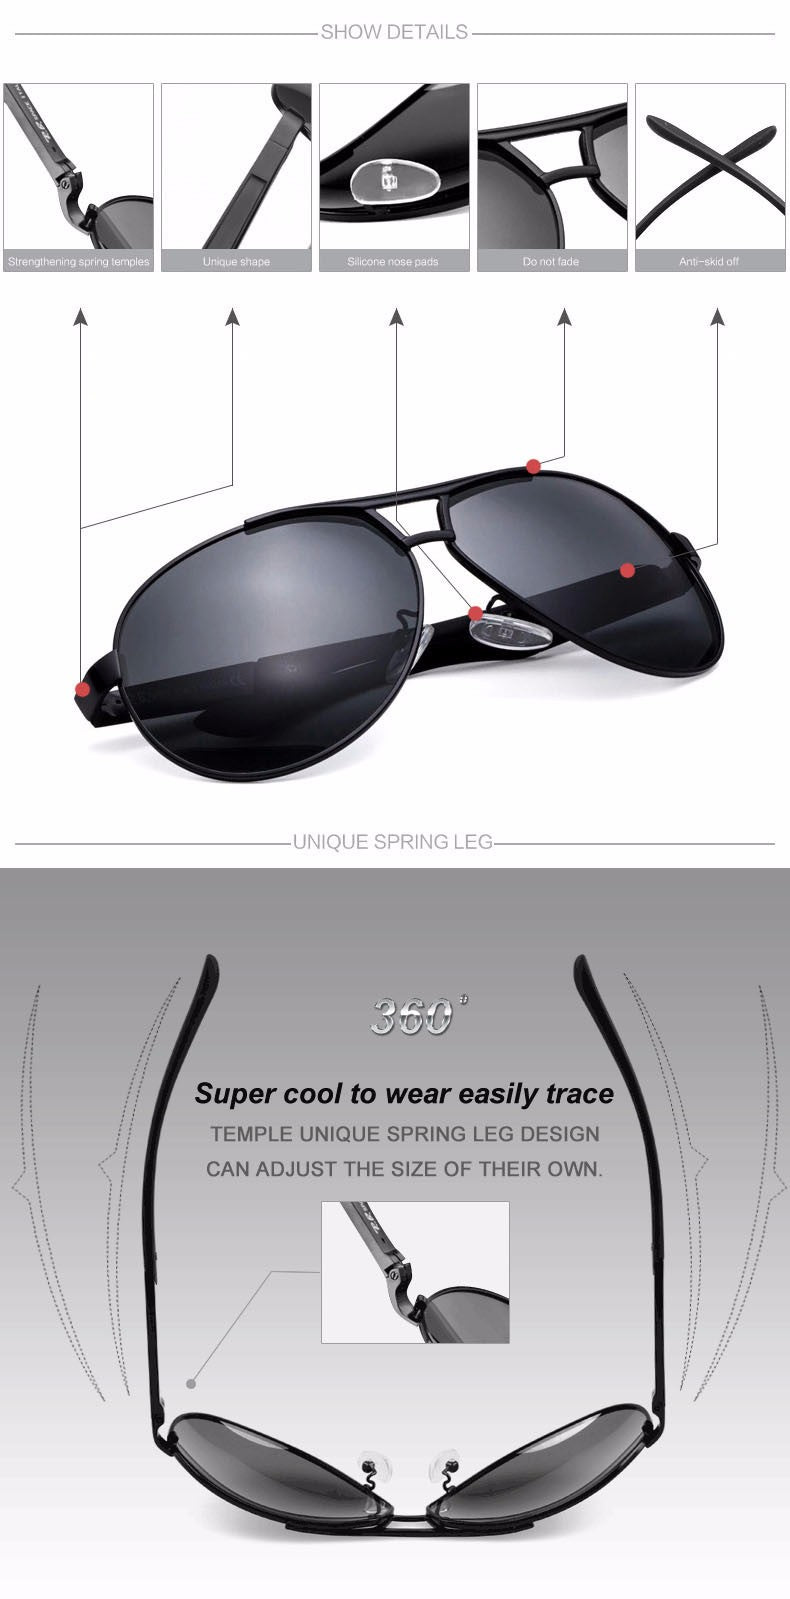 Reven Jate Men's Sunglasses Uv400 Polarized Coating Driving Mirrors Frame Material Alloy Sunglasses Reven Jate   